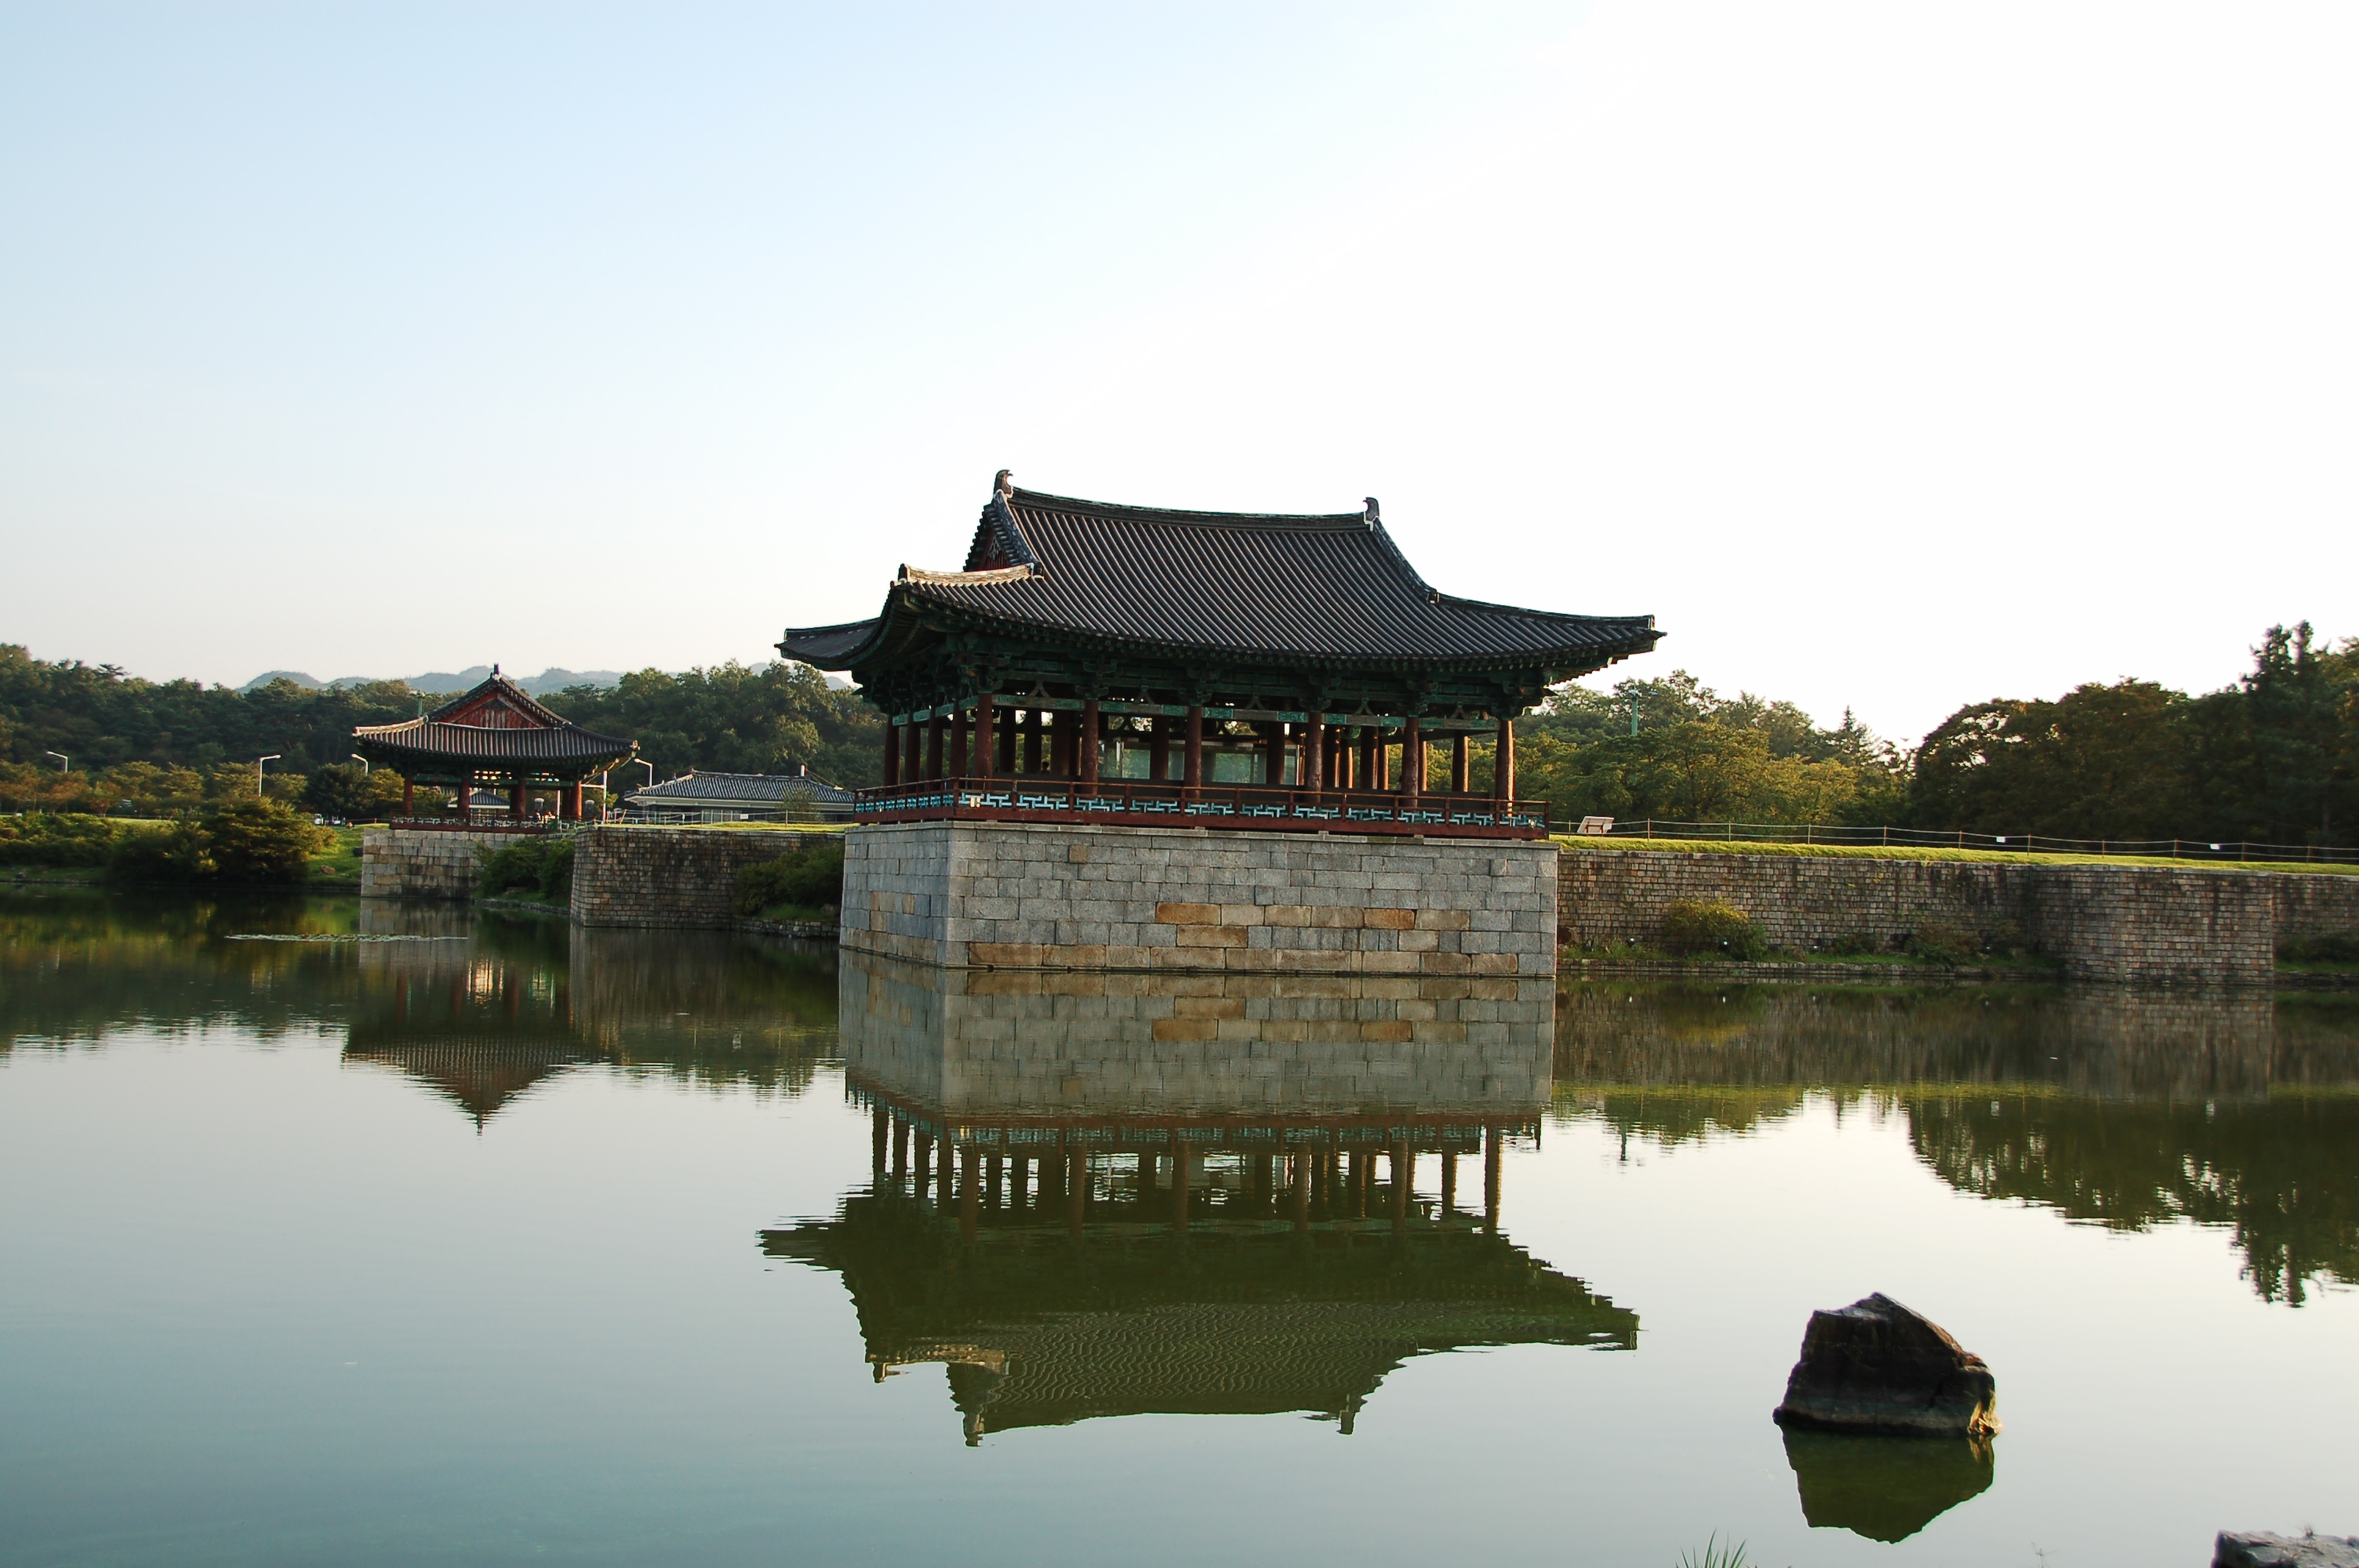 азиатской архитектуры, отражения, Южная Корея - обои на рабочий стол